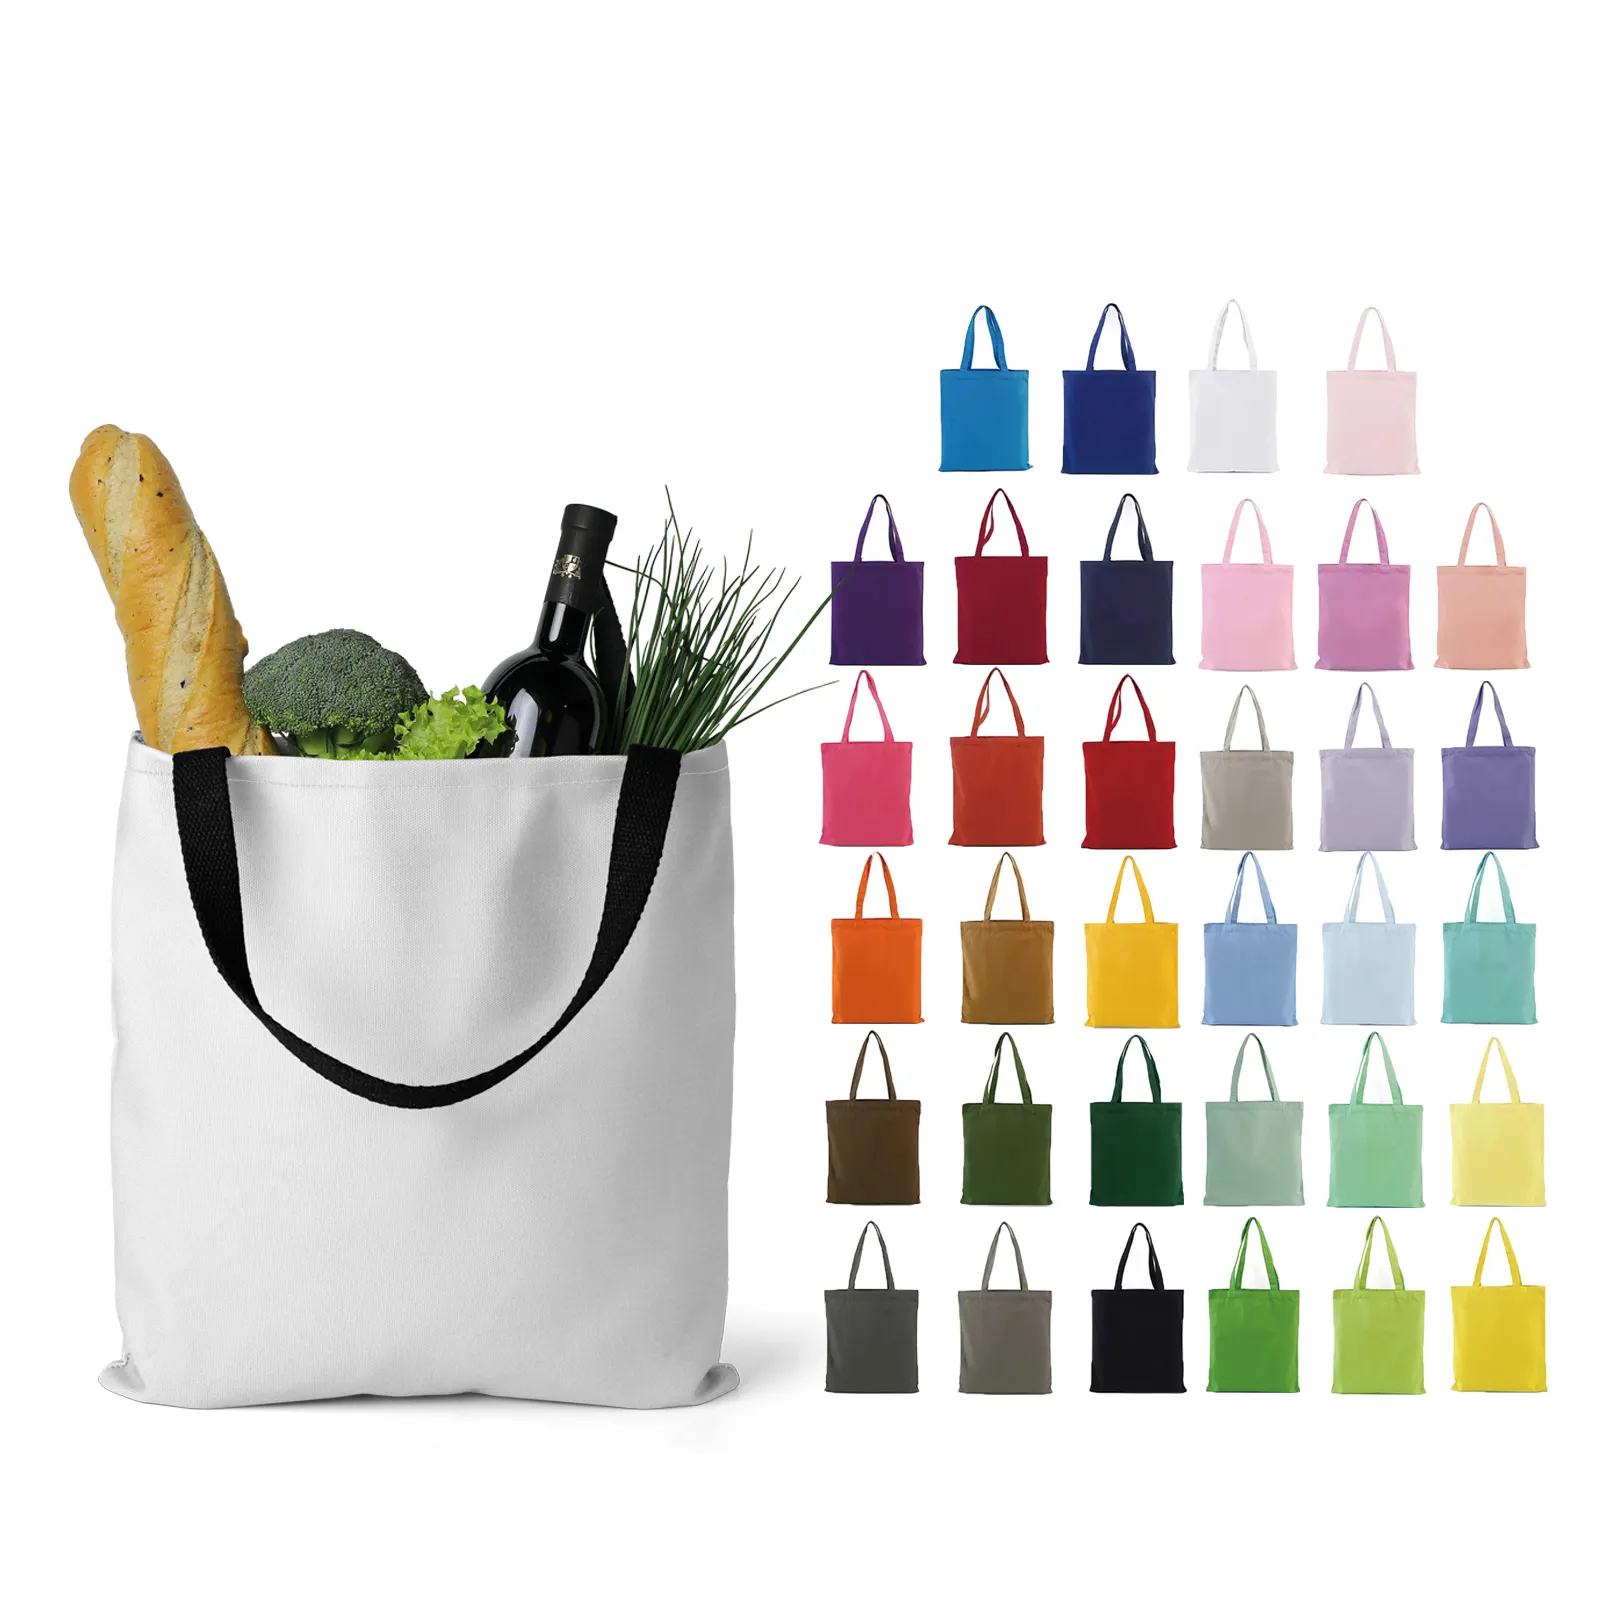 Canvas Shopping Tote Bag Durable Cotton Bags for Everyday Use and Shopping Durable Canvas Bags with Logo